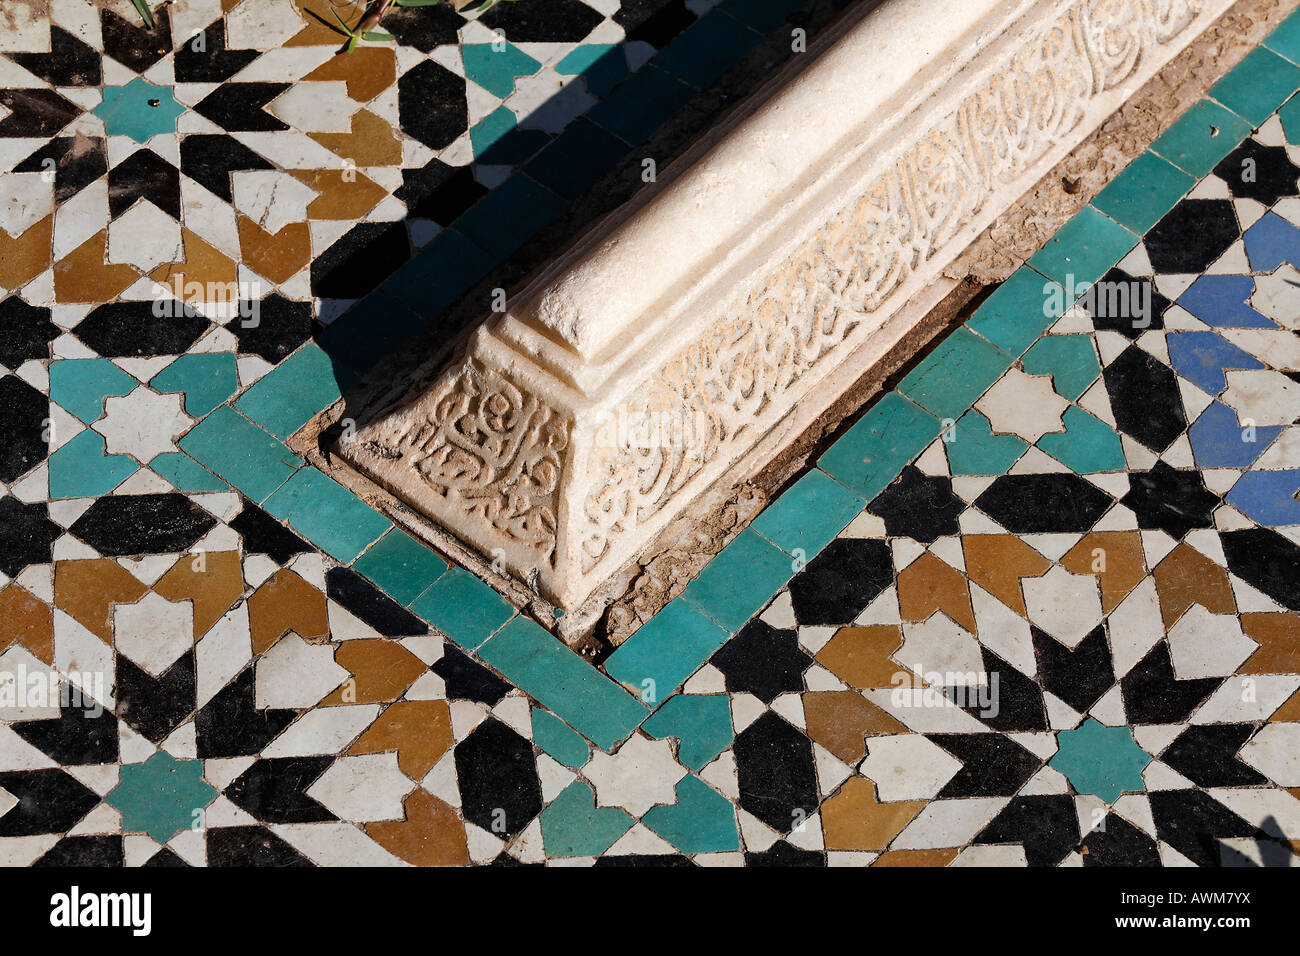 Lapide arabescato con iscrizione arabesca circondata da tegole colorate, Tombe Saadien, Medina, Marocco, Africa Foto Stock